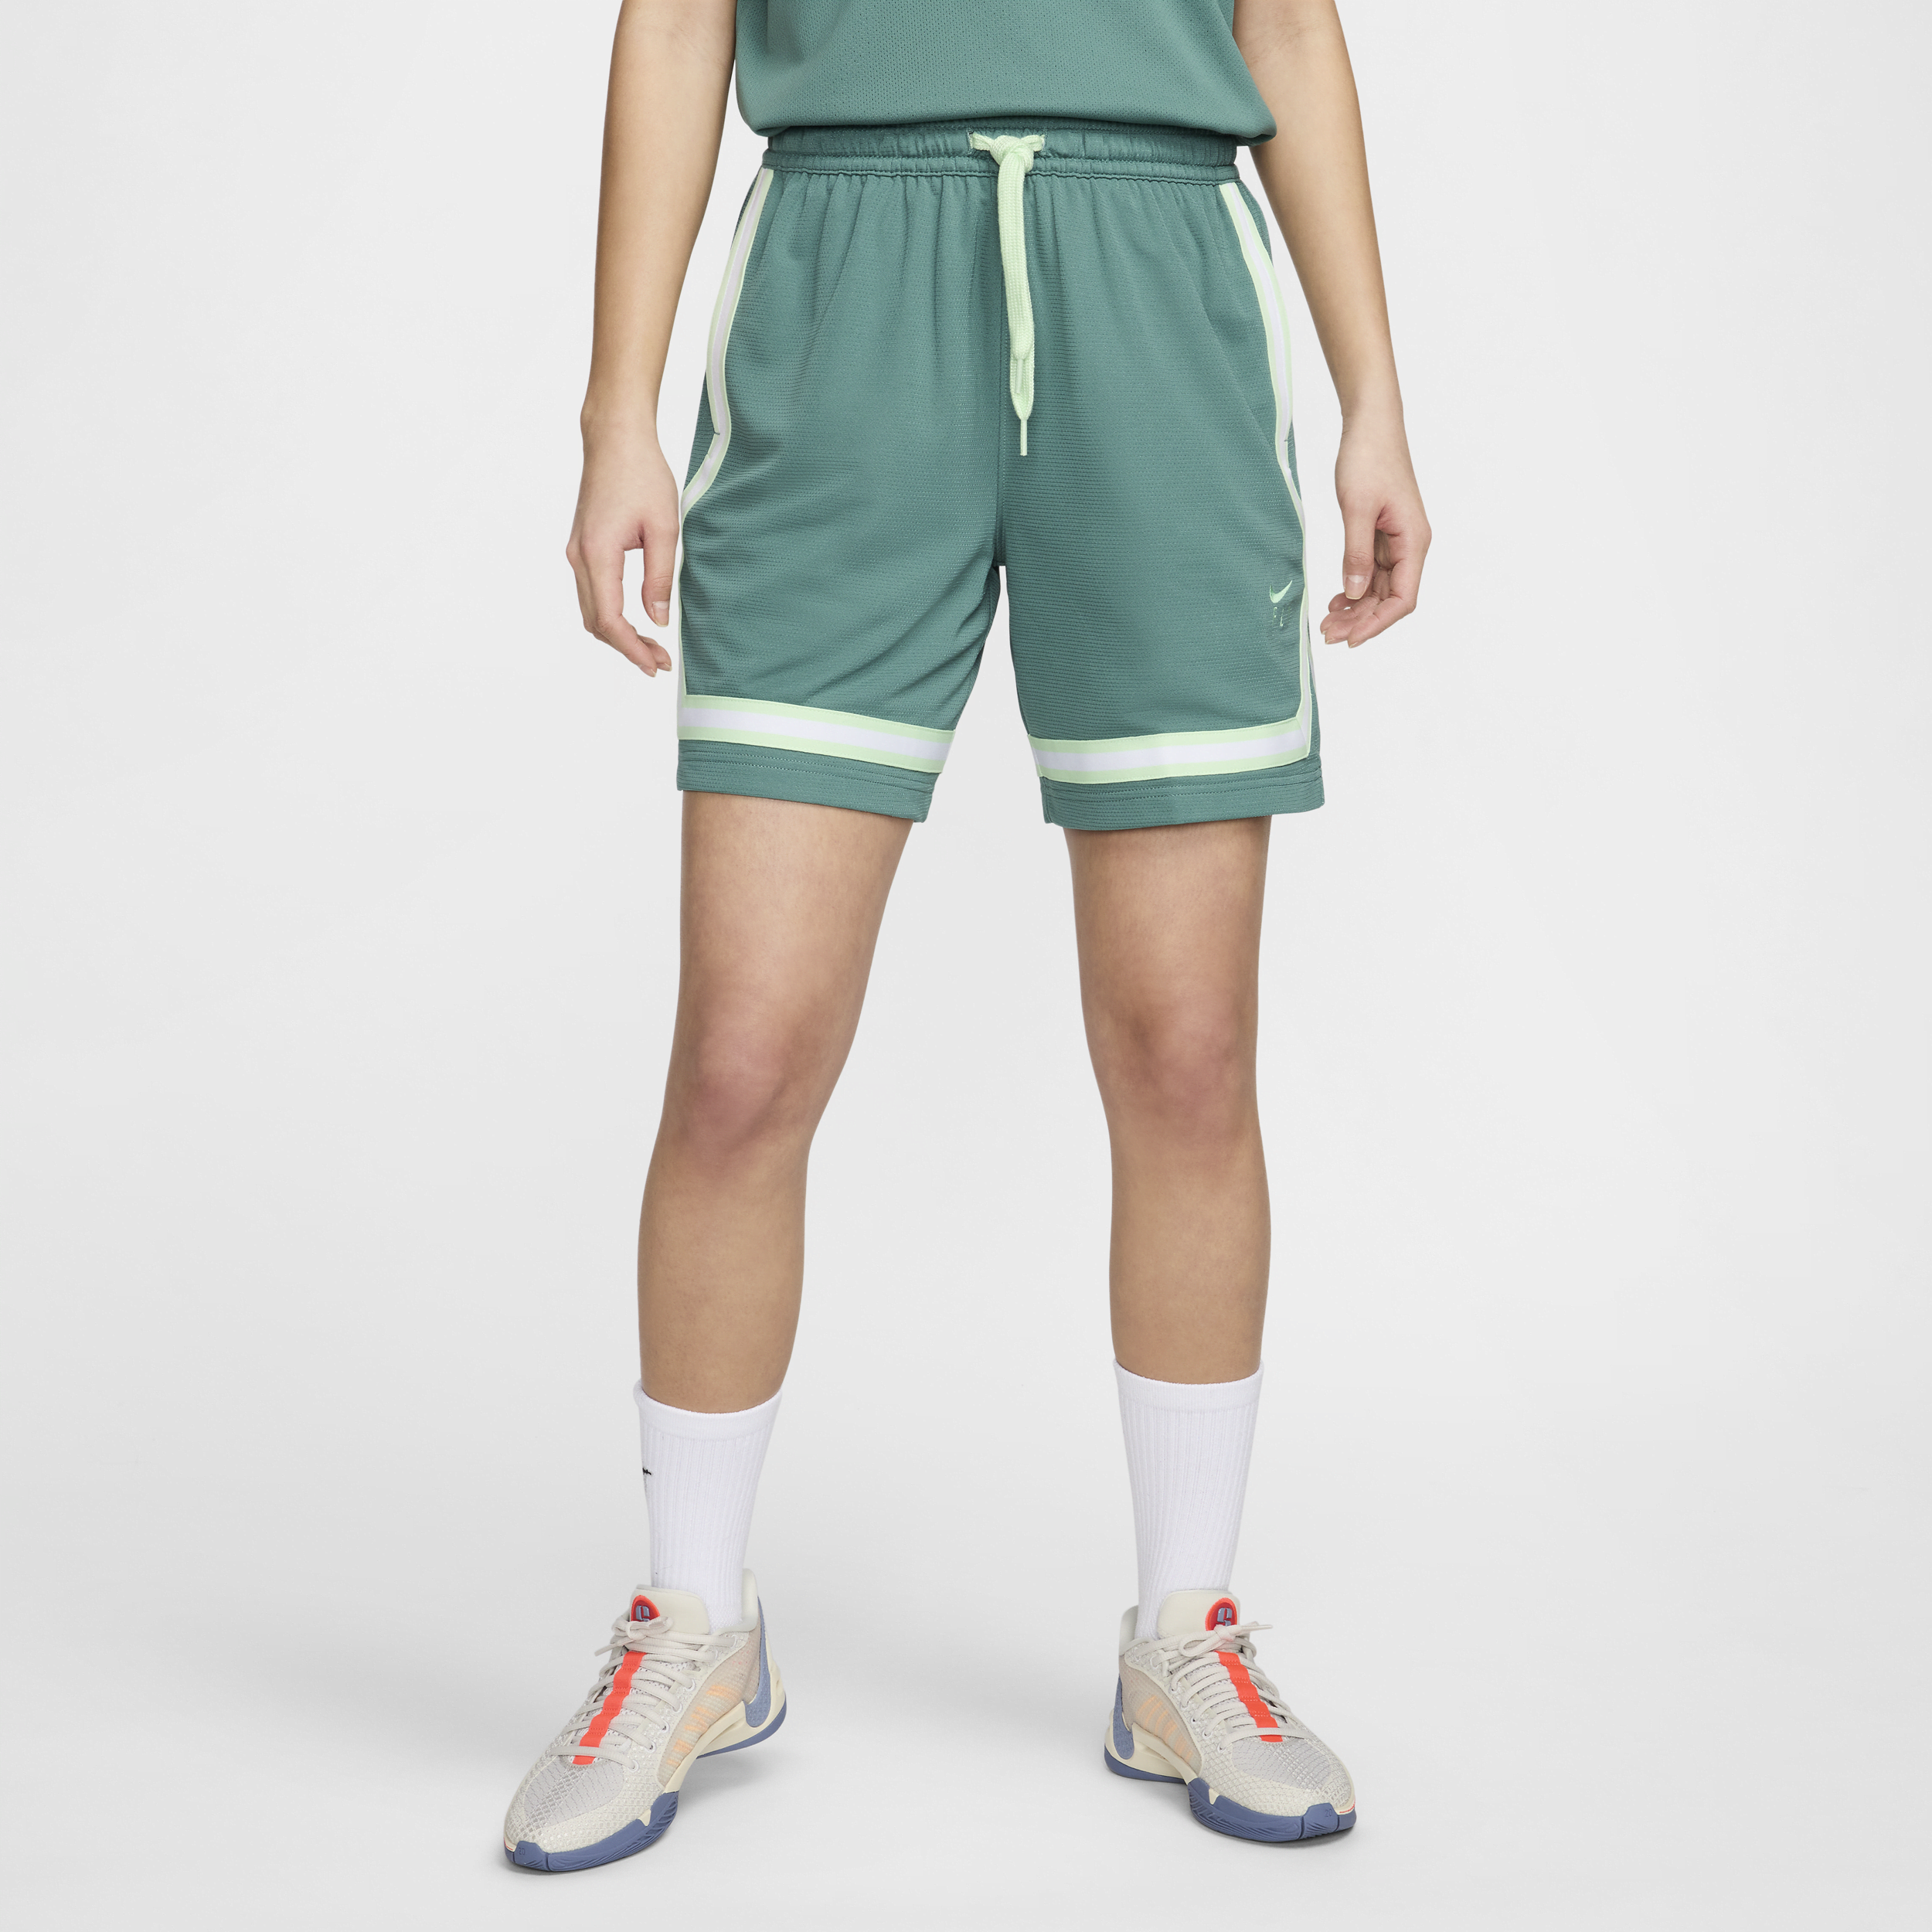 Shorts da basket Nike Fly Crossover - Donna - Verde